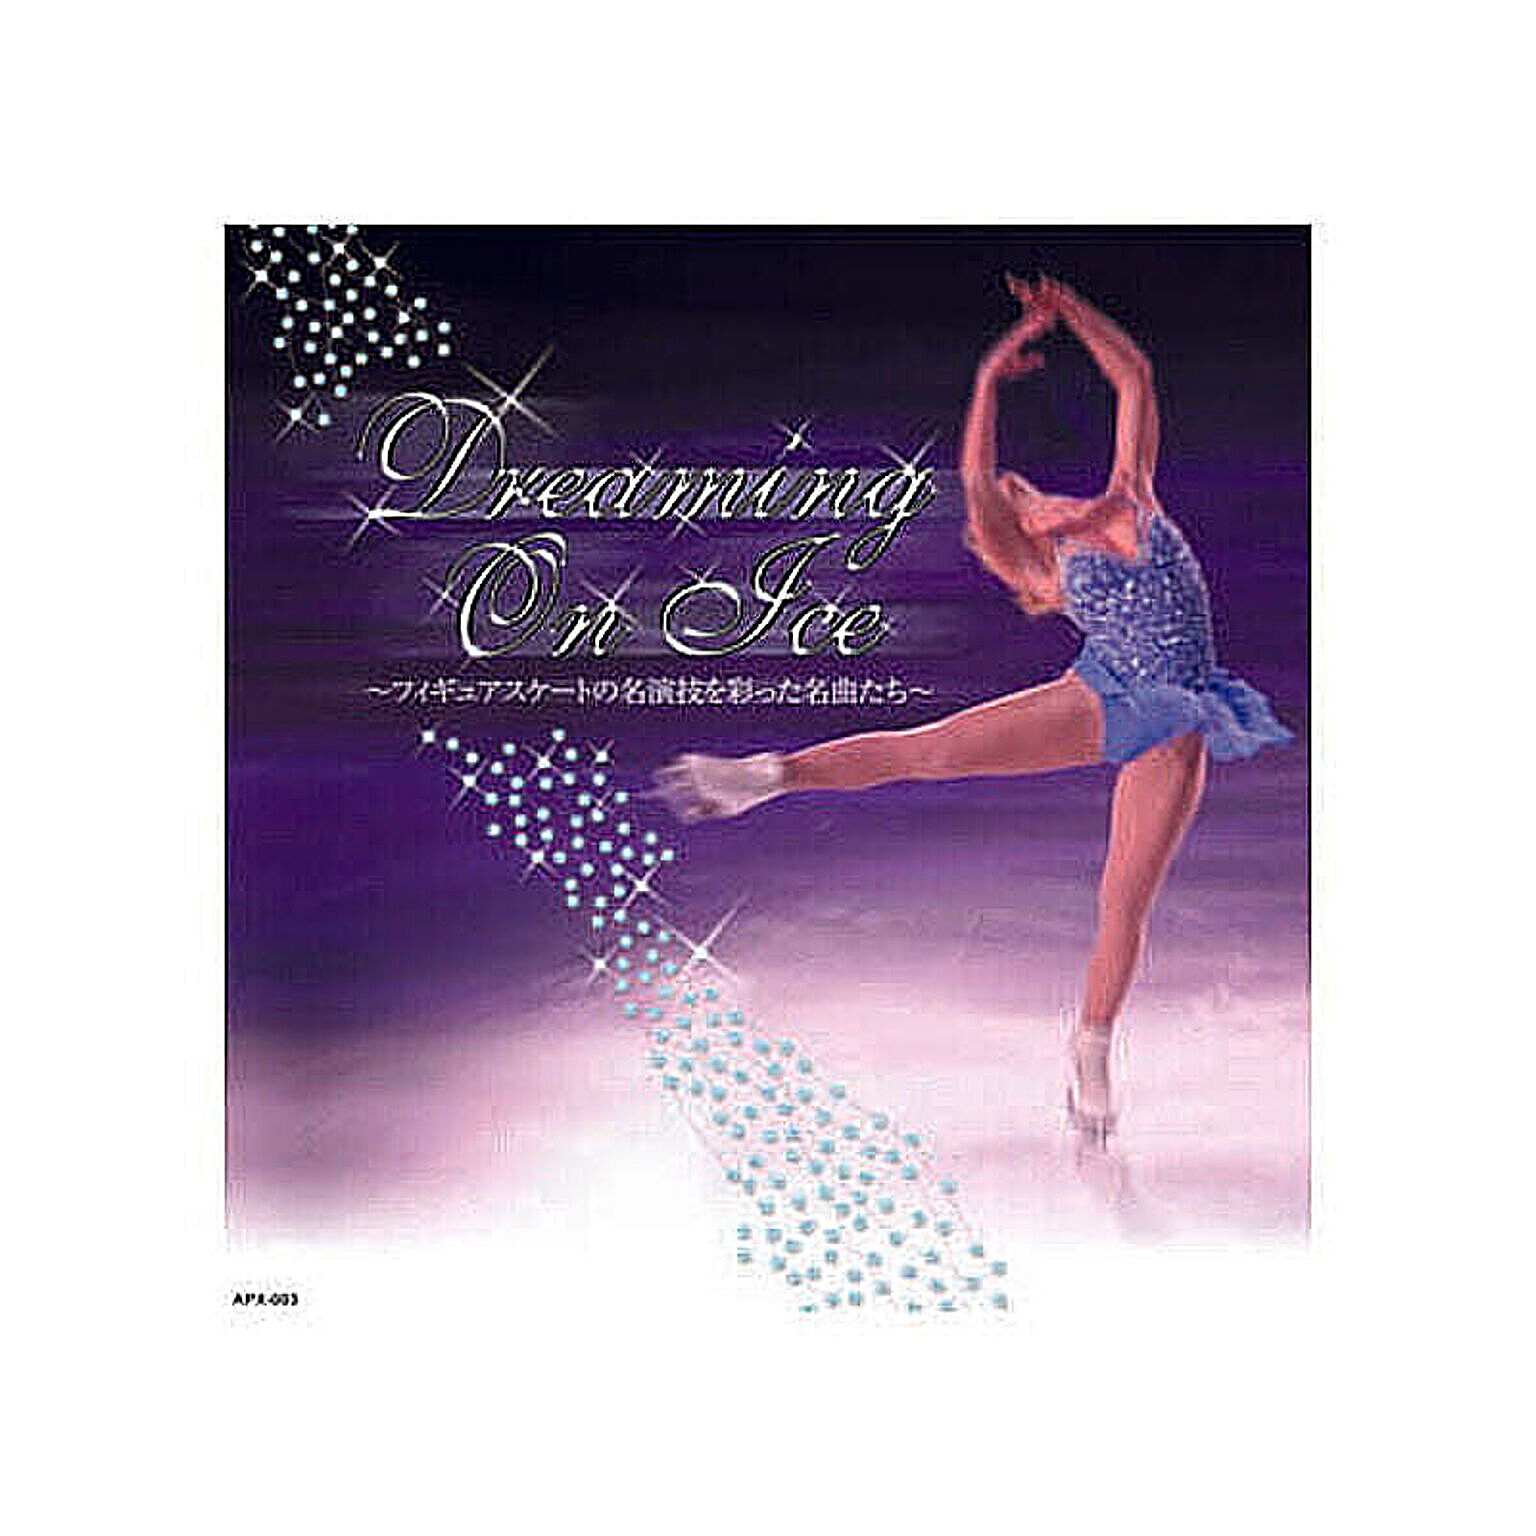 オムニバス フィギュア・クラシック　Dreaming　On　Ice CD 管理No. 4961523160038